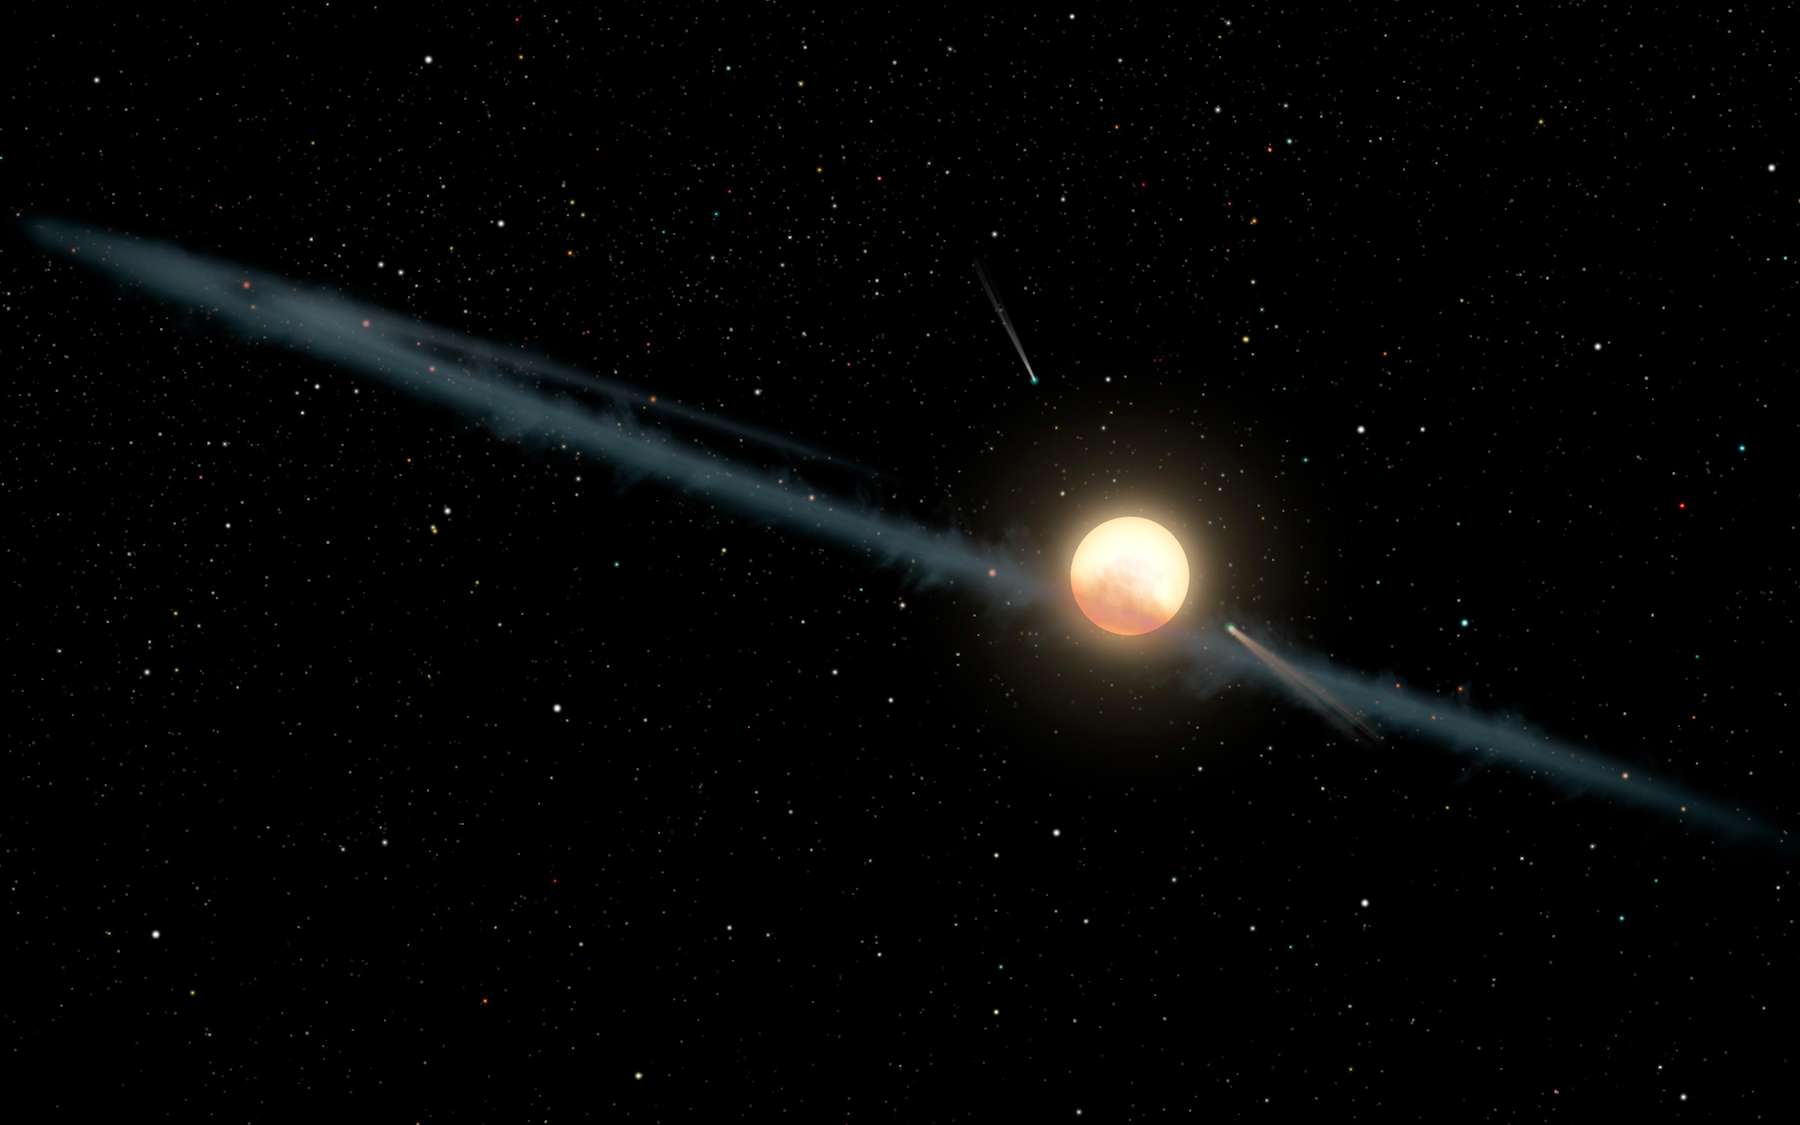 Une nouvelle étude suggère que les morceaux d’une exolune pourraient être en train de s’accumuler dans un disque entourant l’étoile de Tabby, bloquant ainsi la lumière de l’étoile et la faisant disparaître progressivement. © Nasa/JPL-Caltech